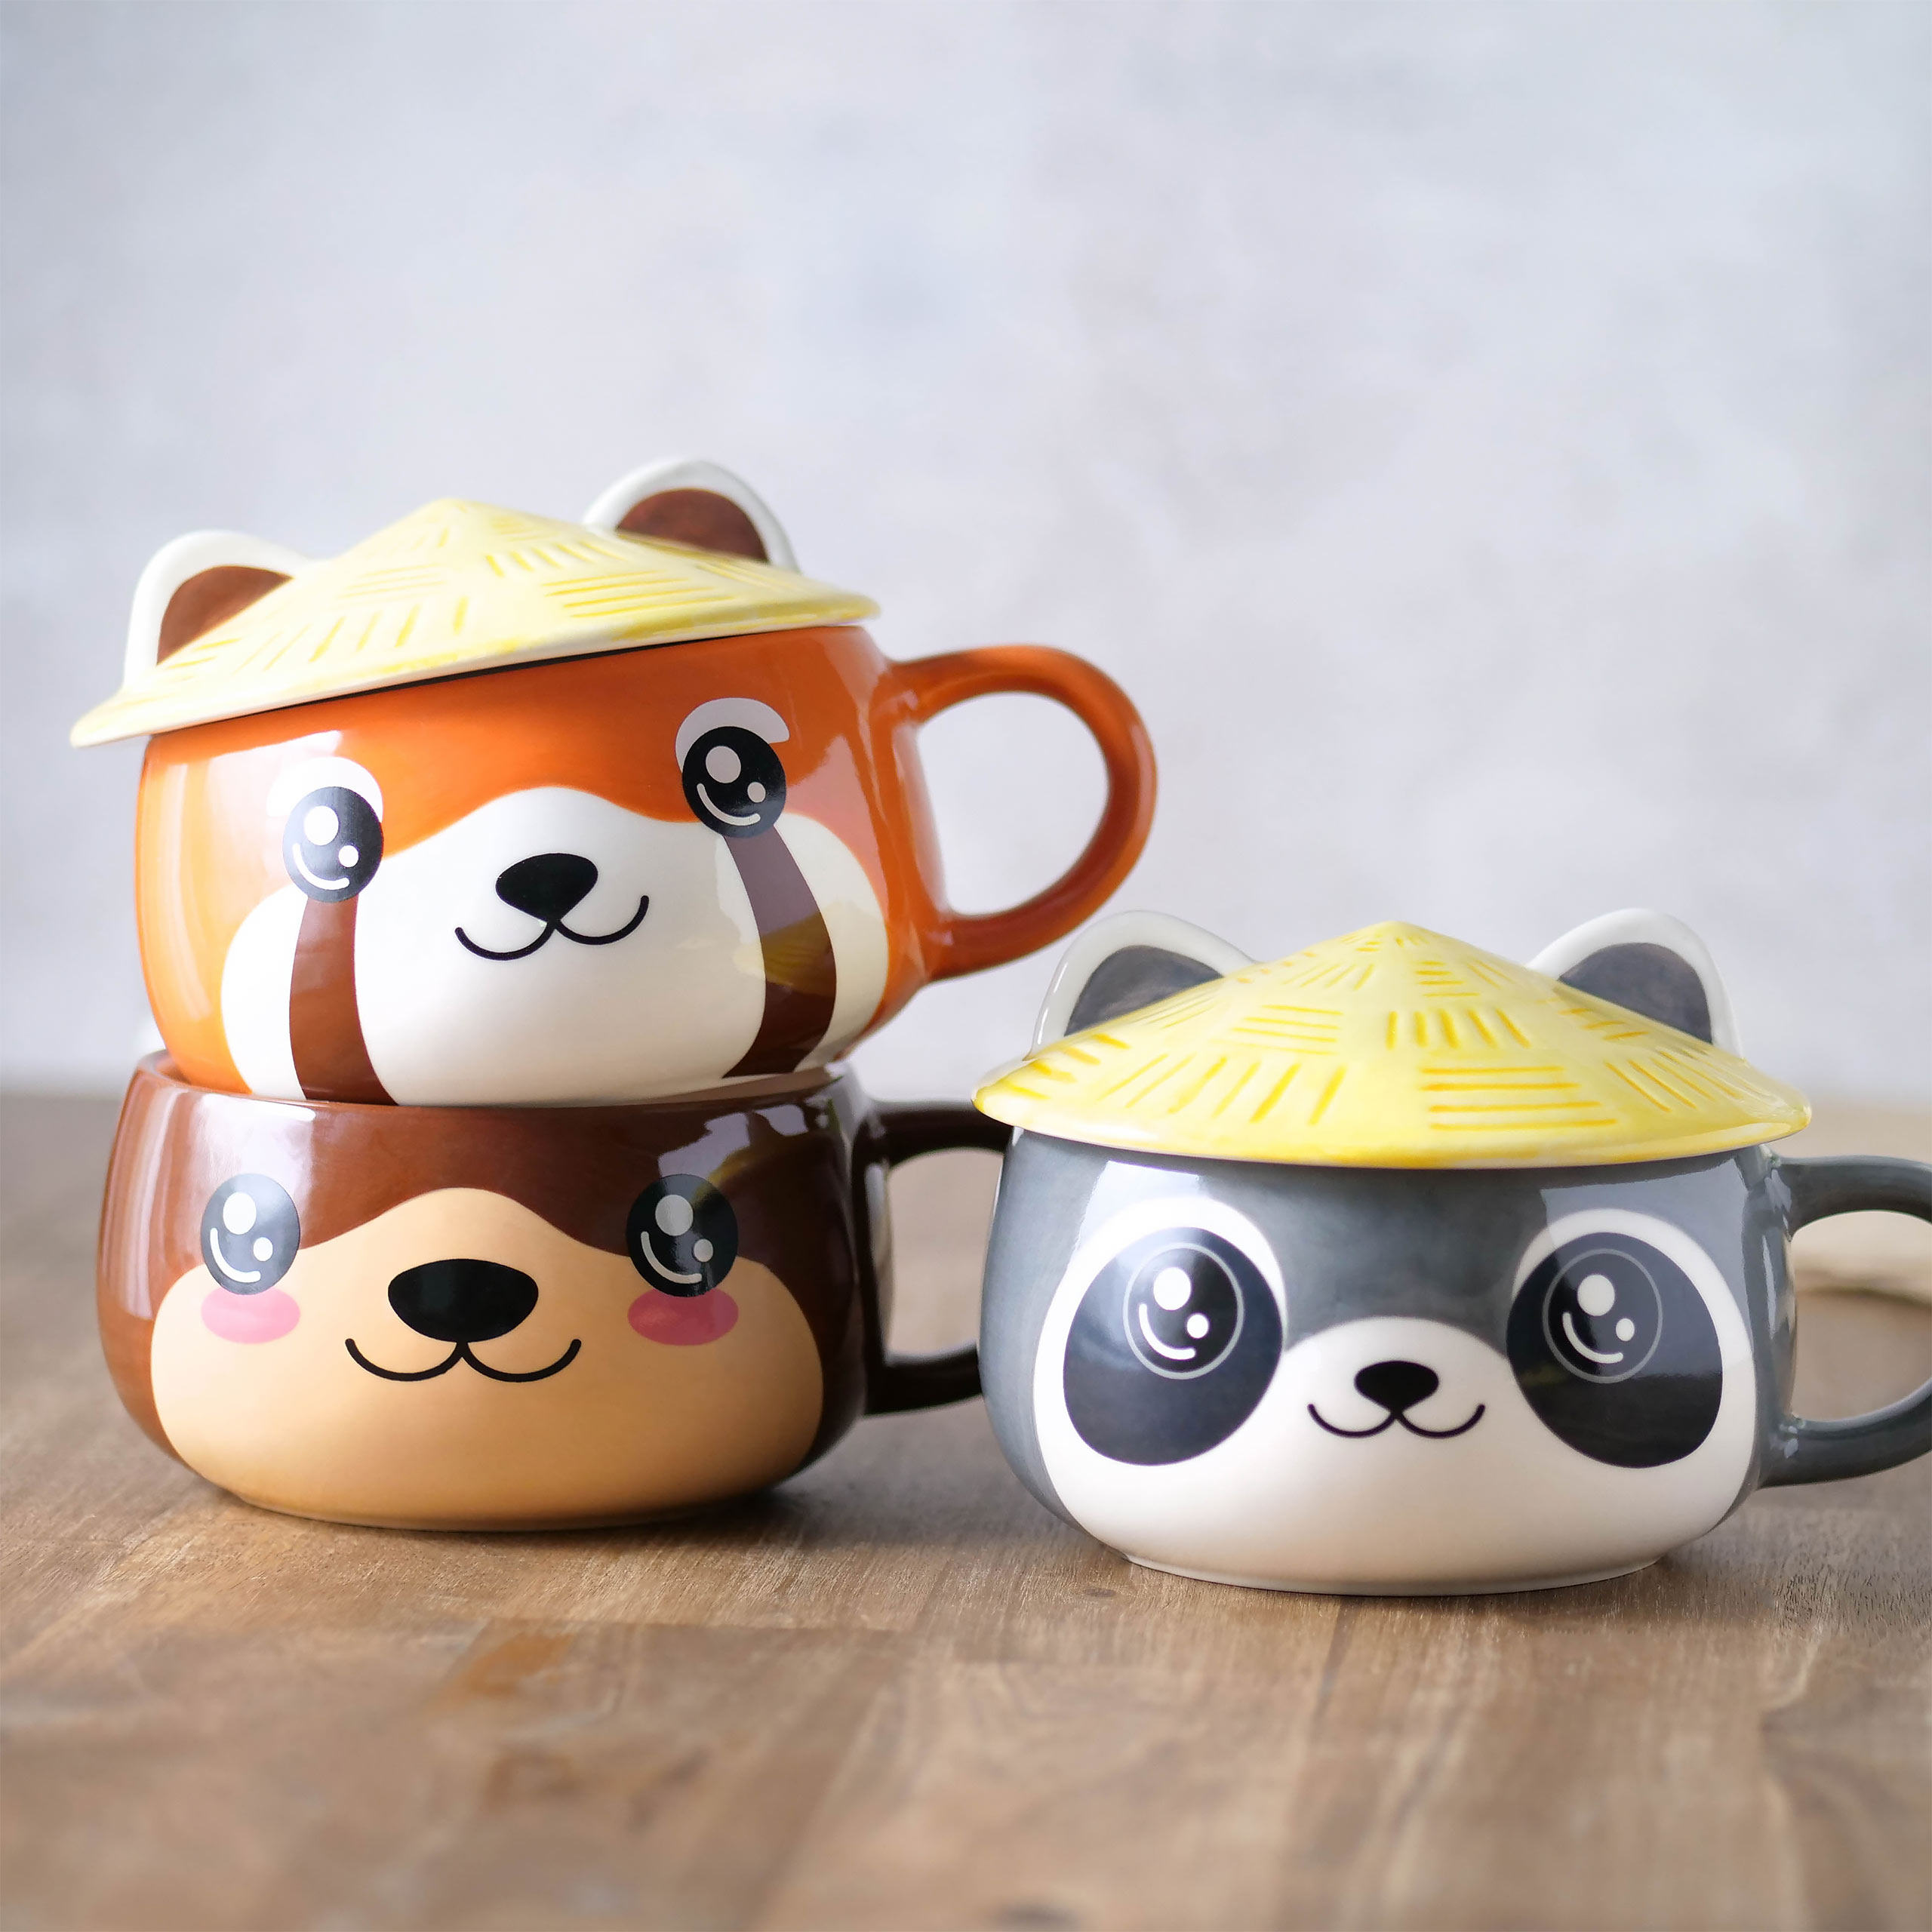 Rode Panda Kawaii Mok met Deksel voor Anime Fans